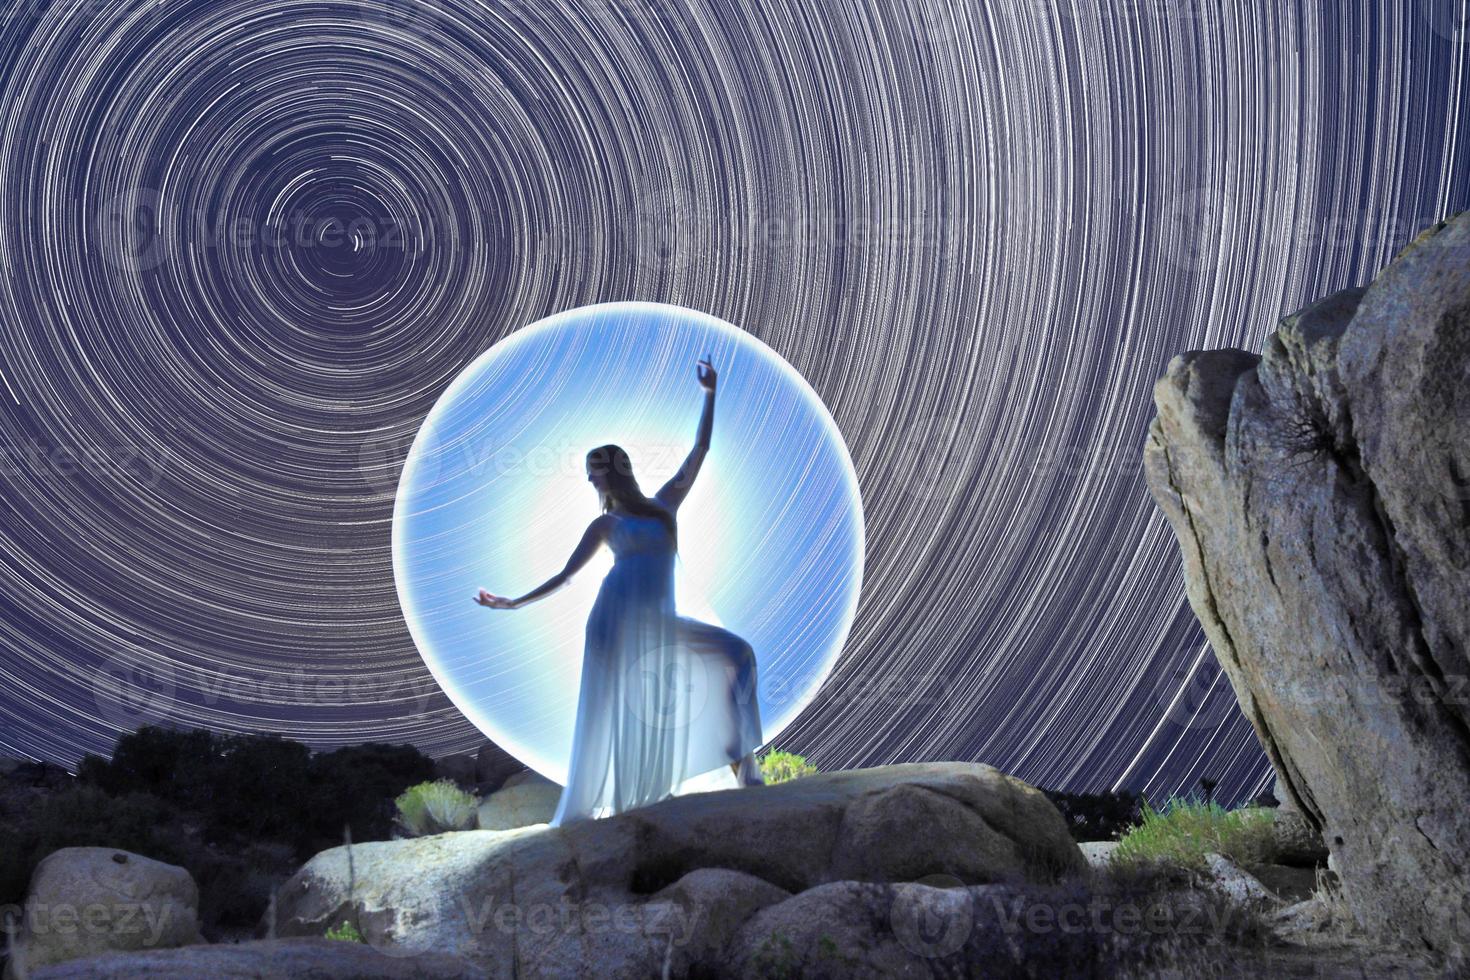 femme posant la lumière peinte sous les sentiers de l'étoile du nord photo